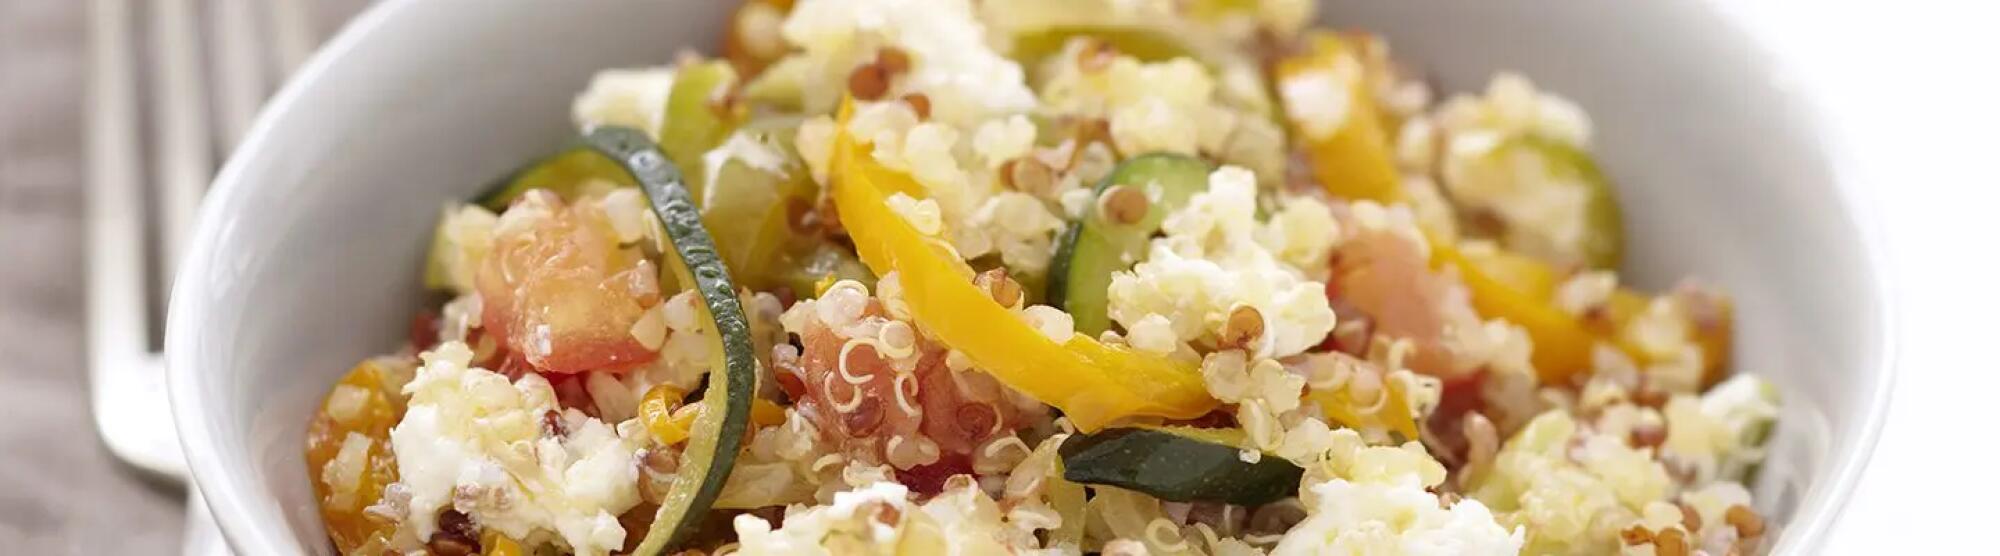 Recette : Salade de quinoa aux légumes et fromage frais